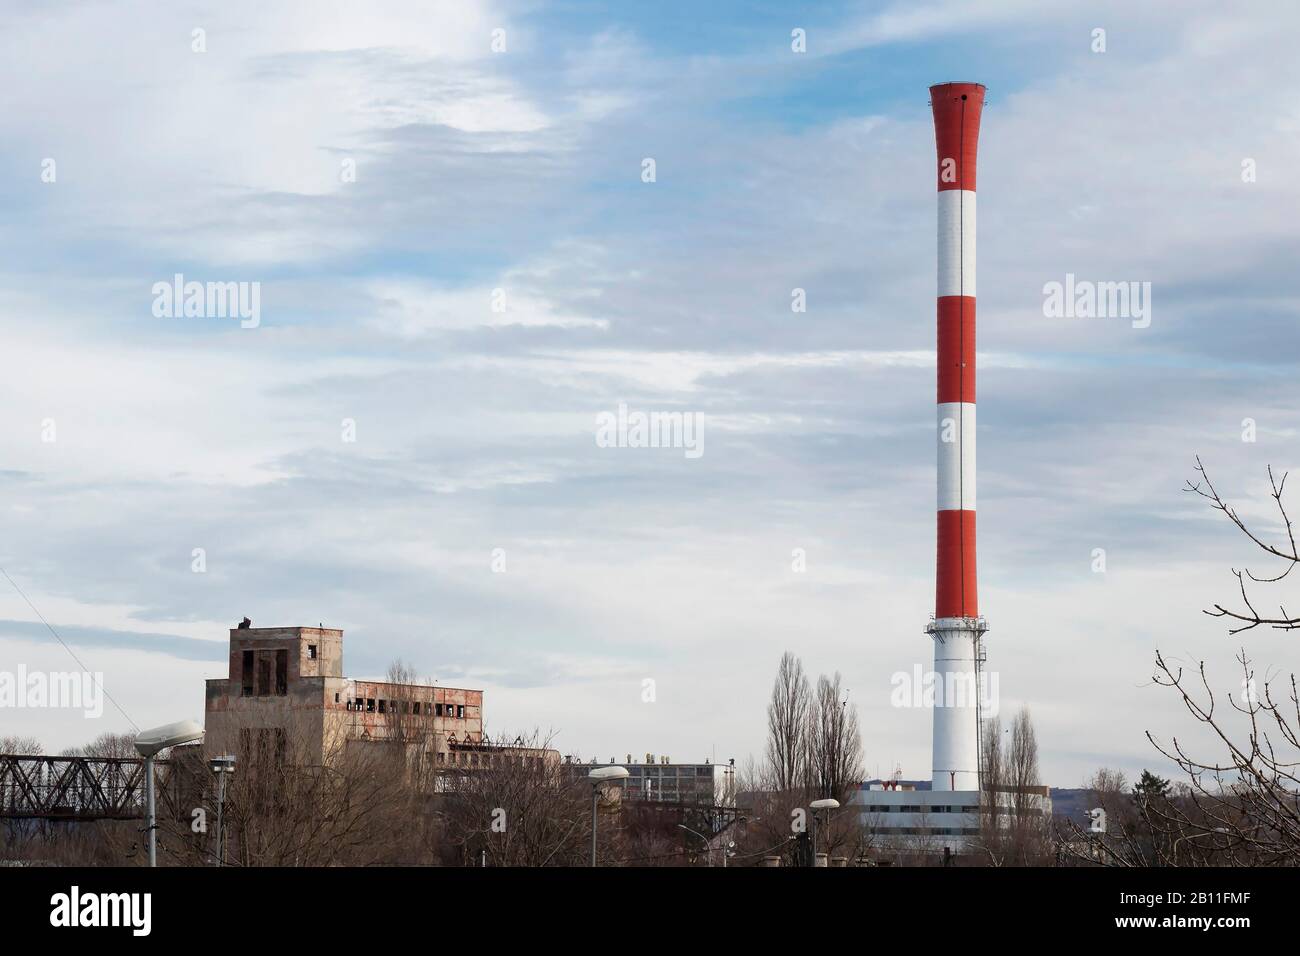 Belgrado, Serbia - 12 febbraio 2020: Impianto di riscaldamento e centrale ciminiera a strisce rosse e bianche, senza fumo, in una parte industriale della t. Foto Stock